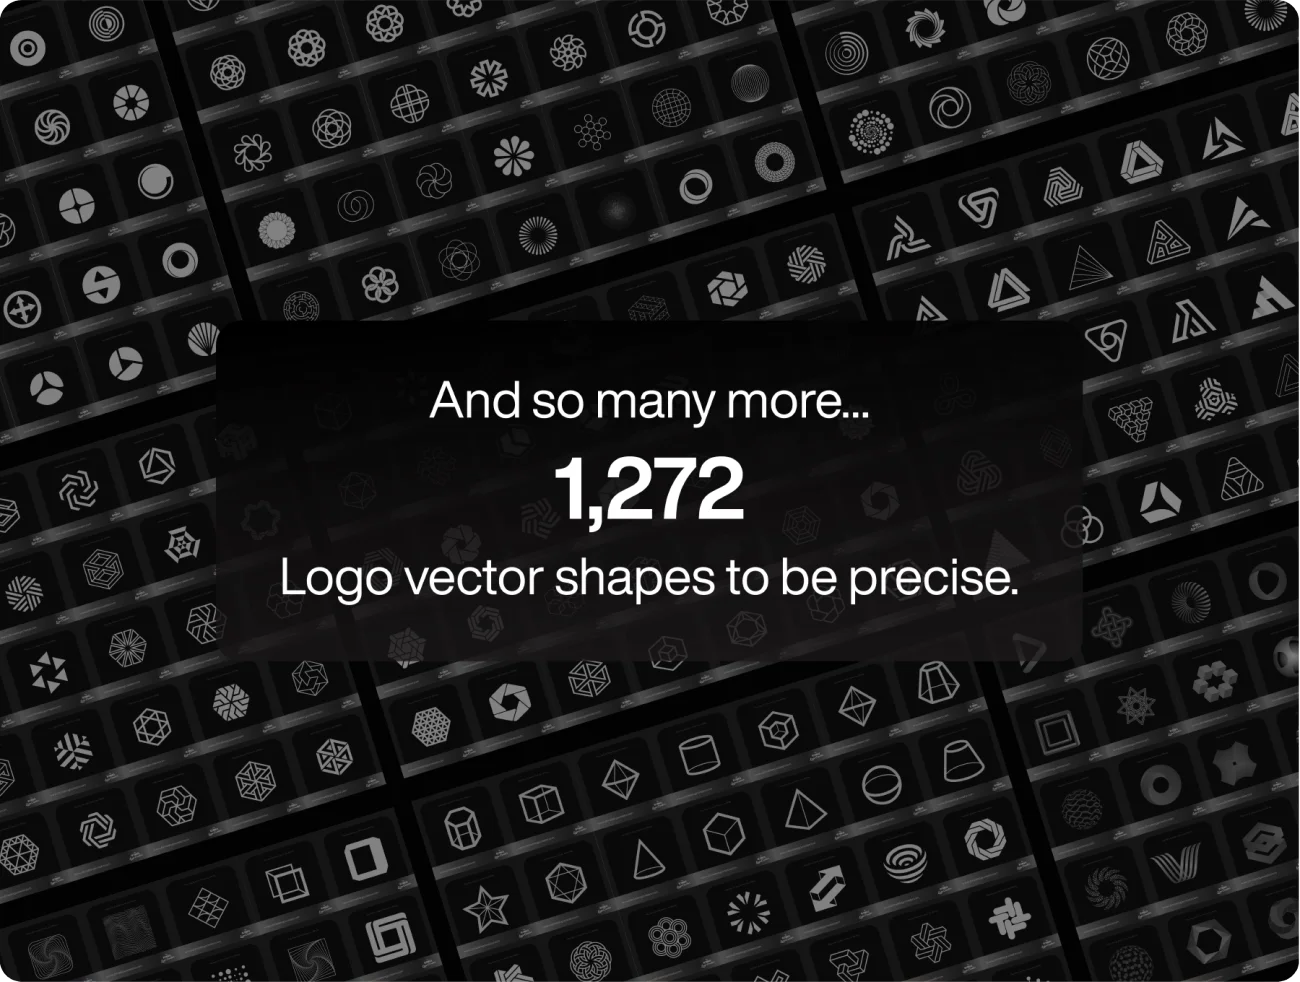 超过1000款用于设计logo的预设矢量形状图形 Logo Shape Pack .sketch .psd .ai插图13